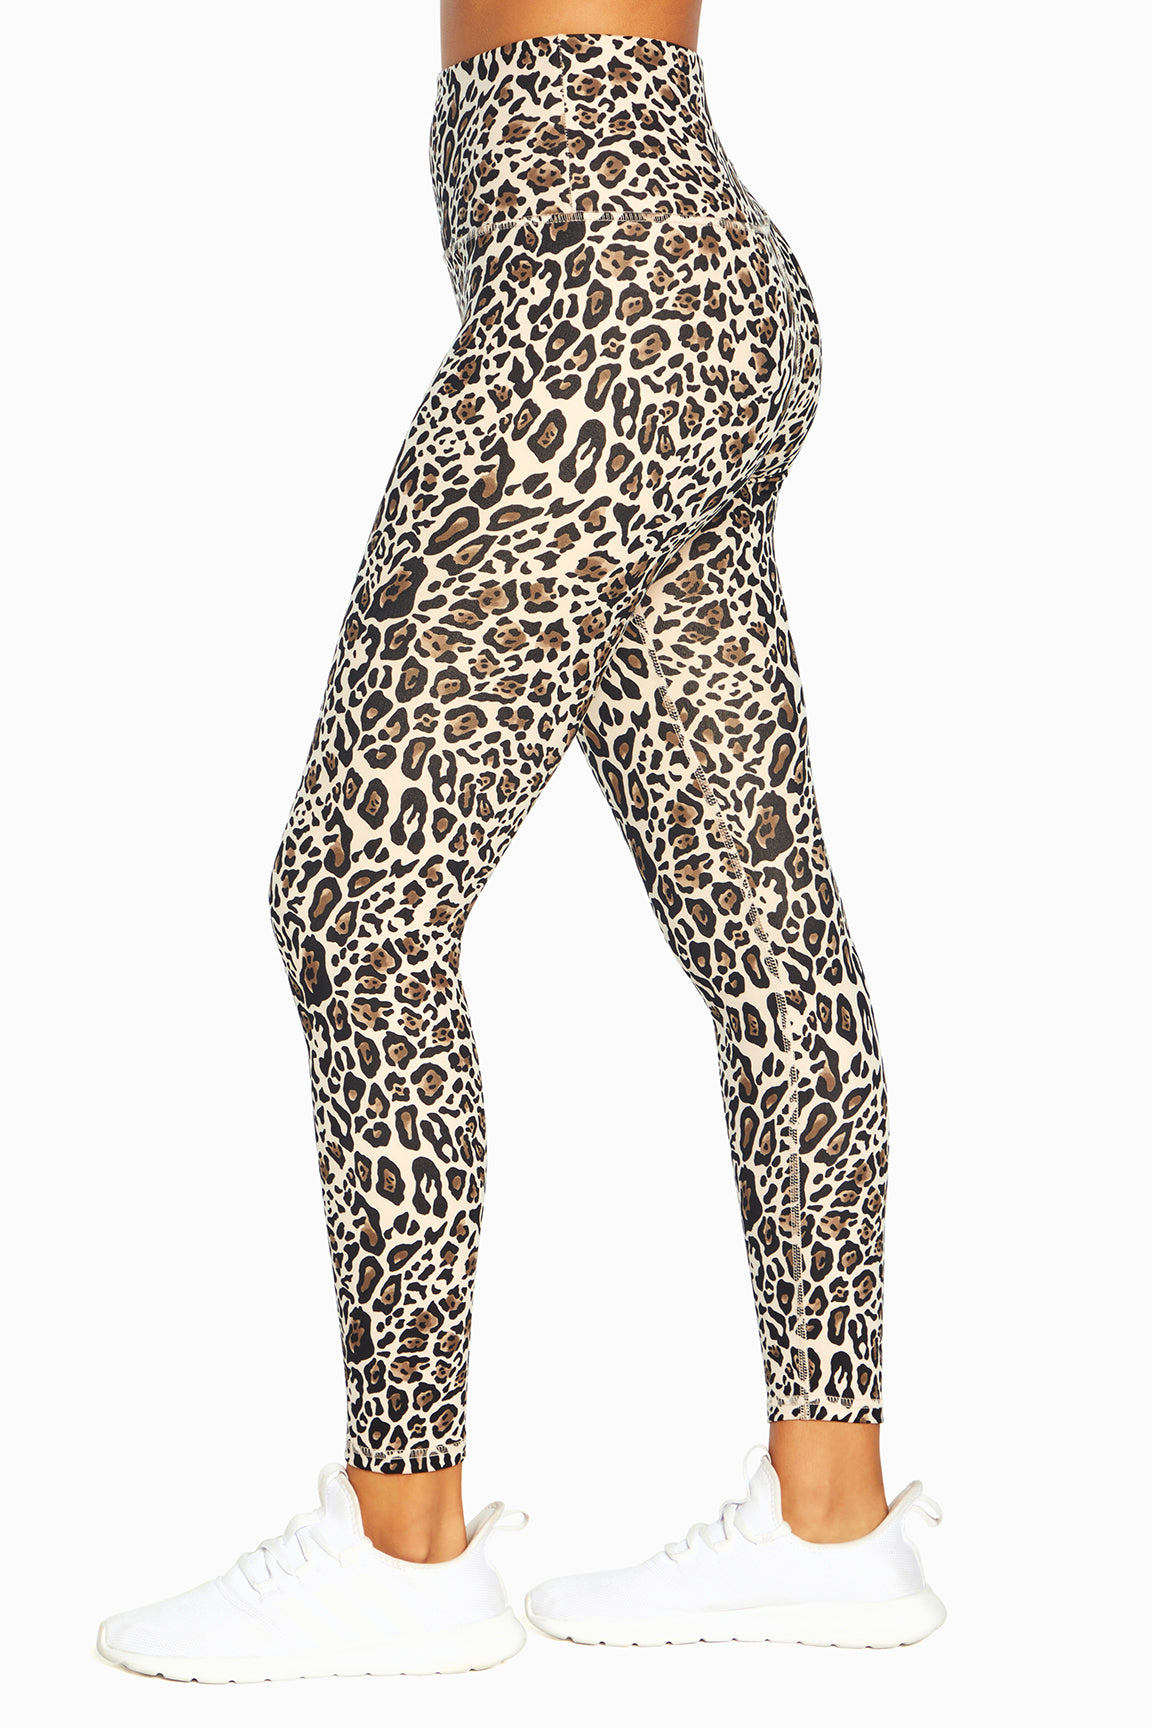 Nilly Legging (Natural Playful Cheetah)